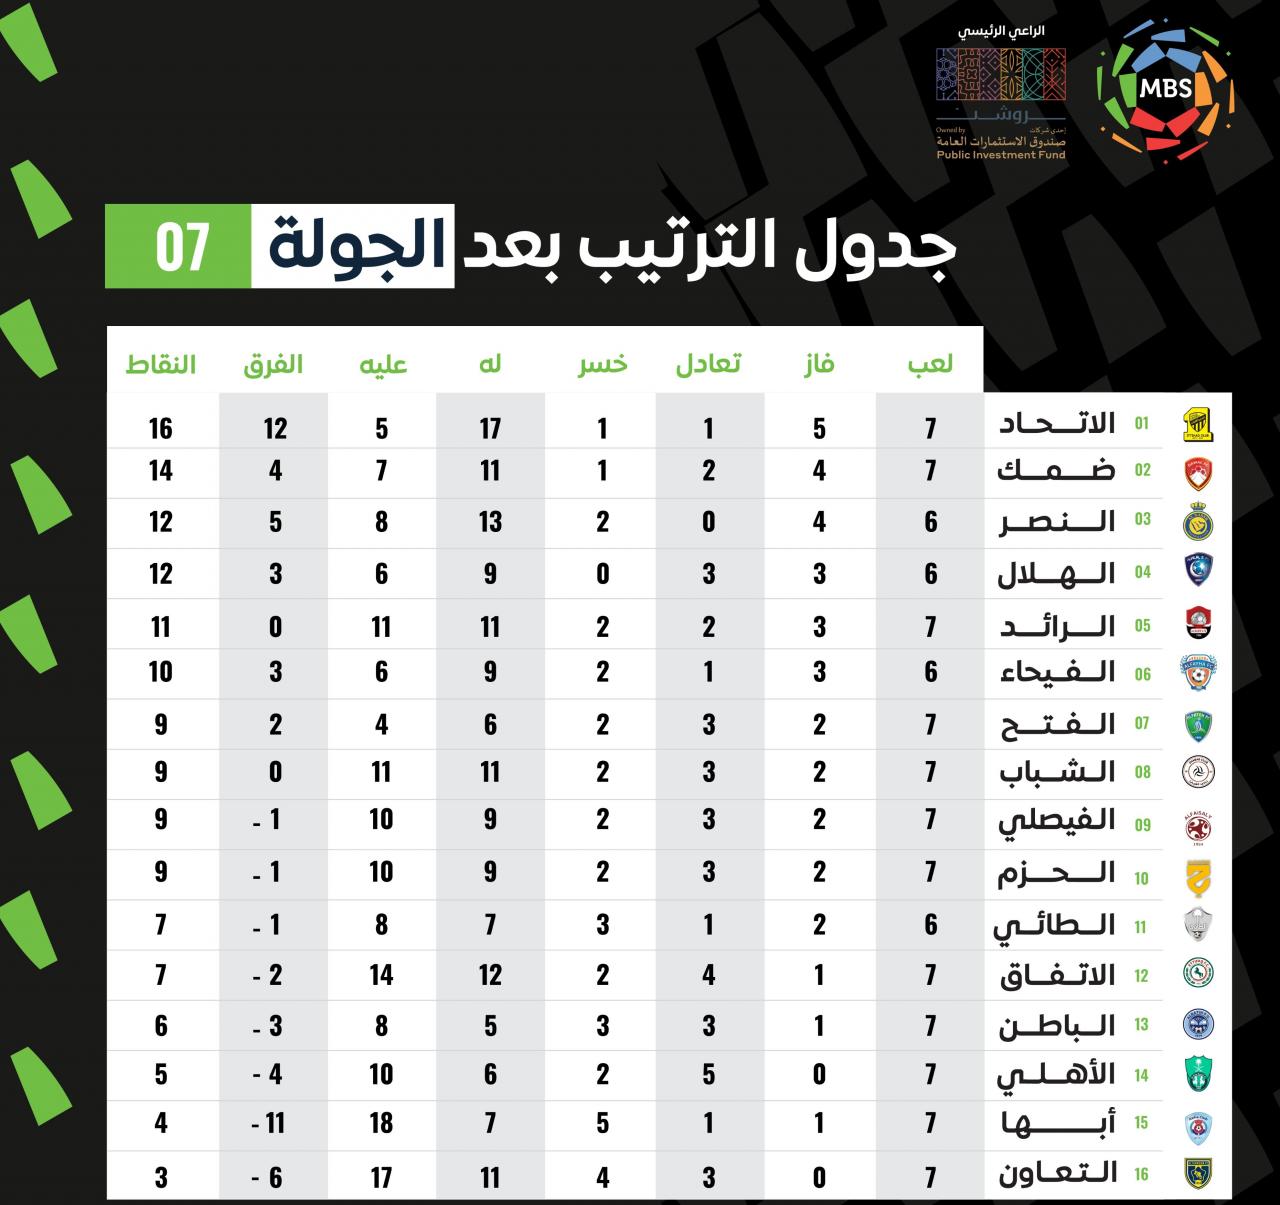 بعد نهاية الجولة 7 ترتيب الدوري السعودي